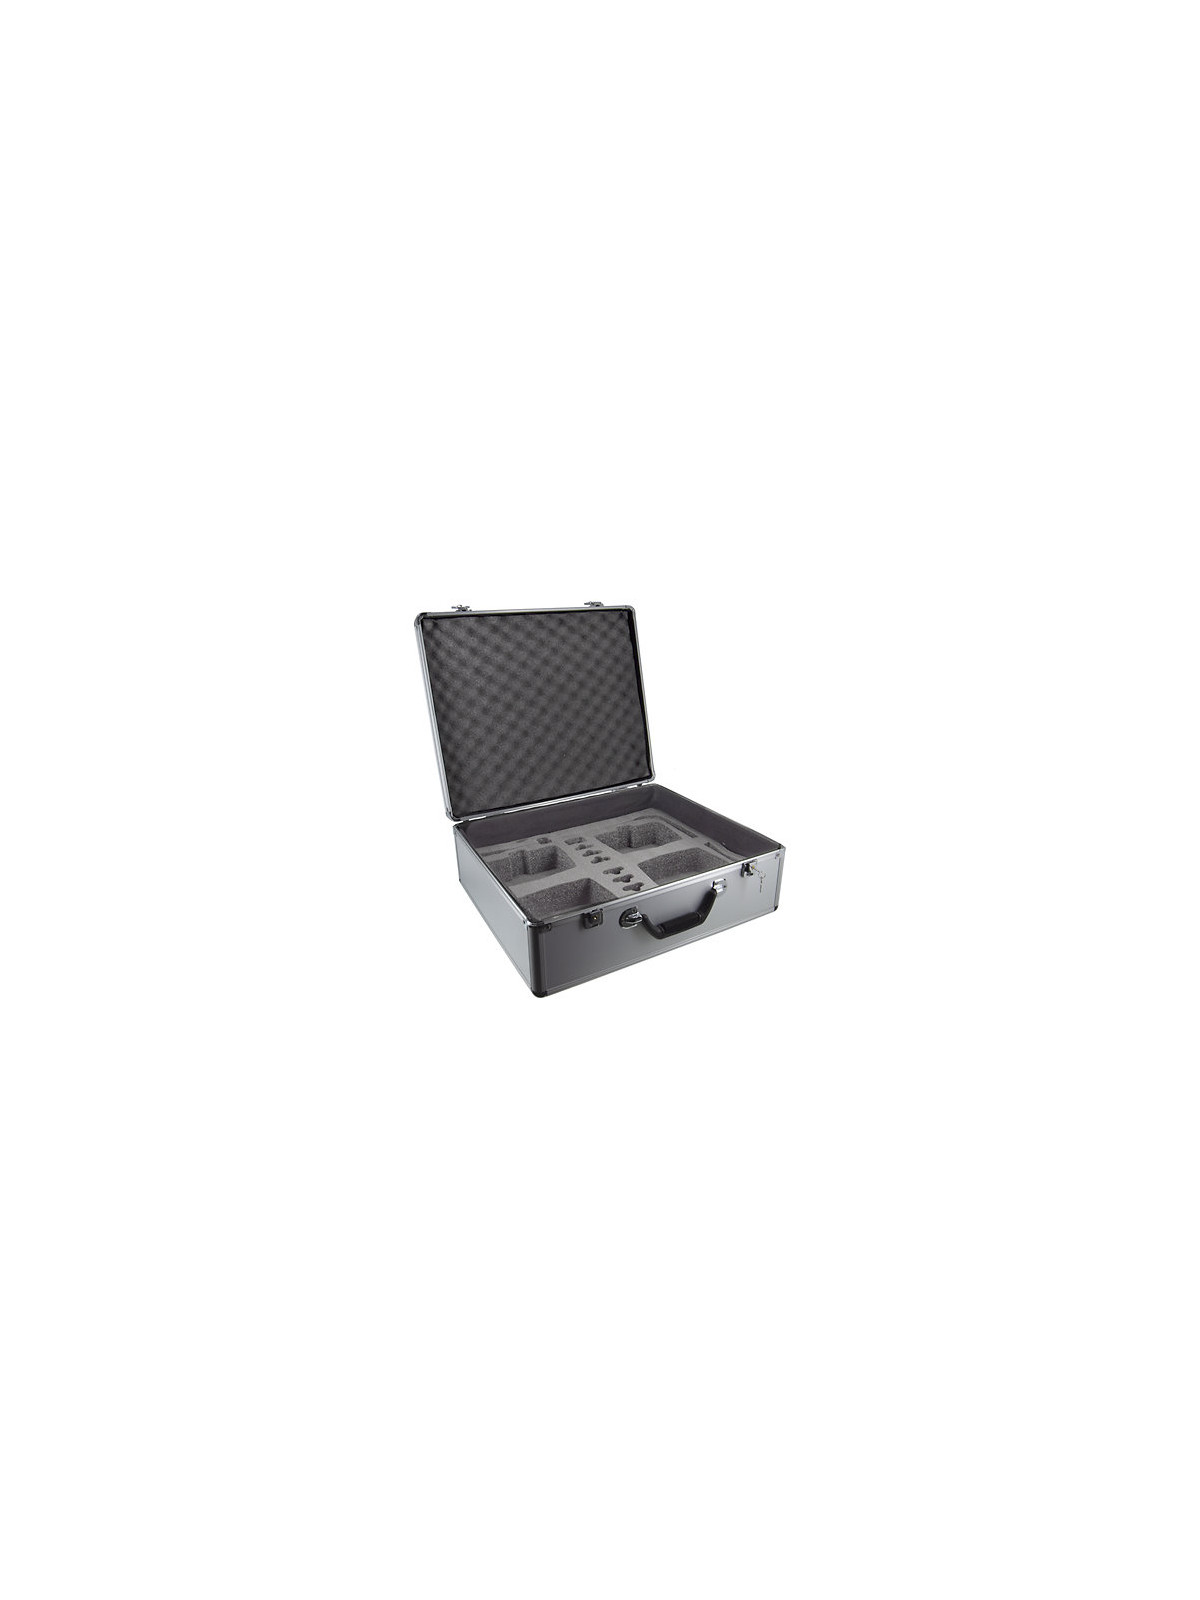 HPA - SC-2288FC8
valise de transport pour 8 micros pupitres de conférence